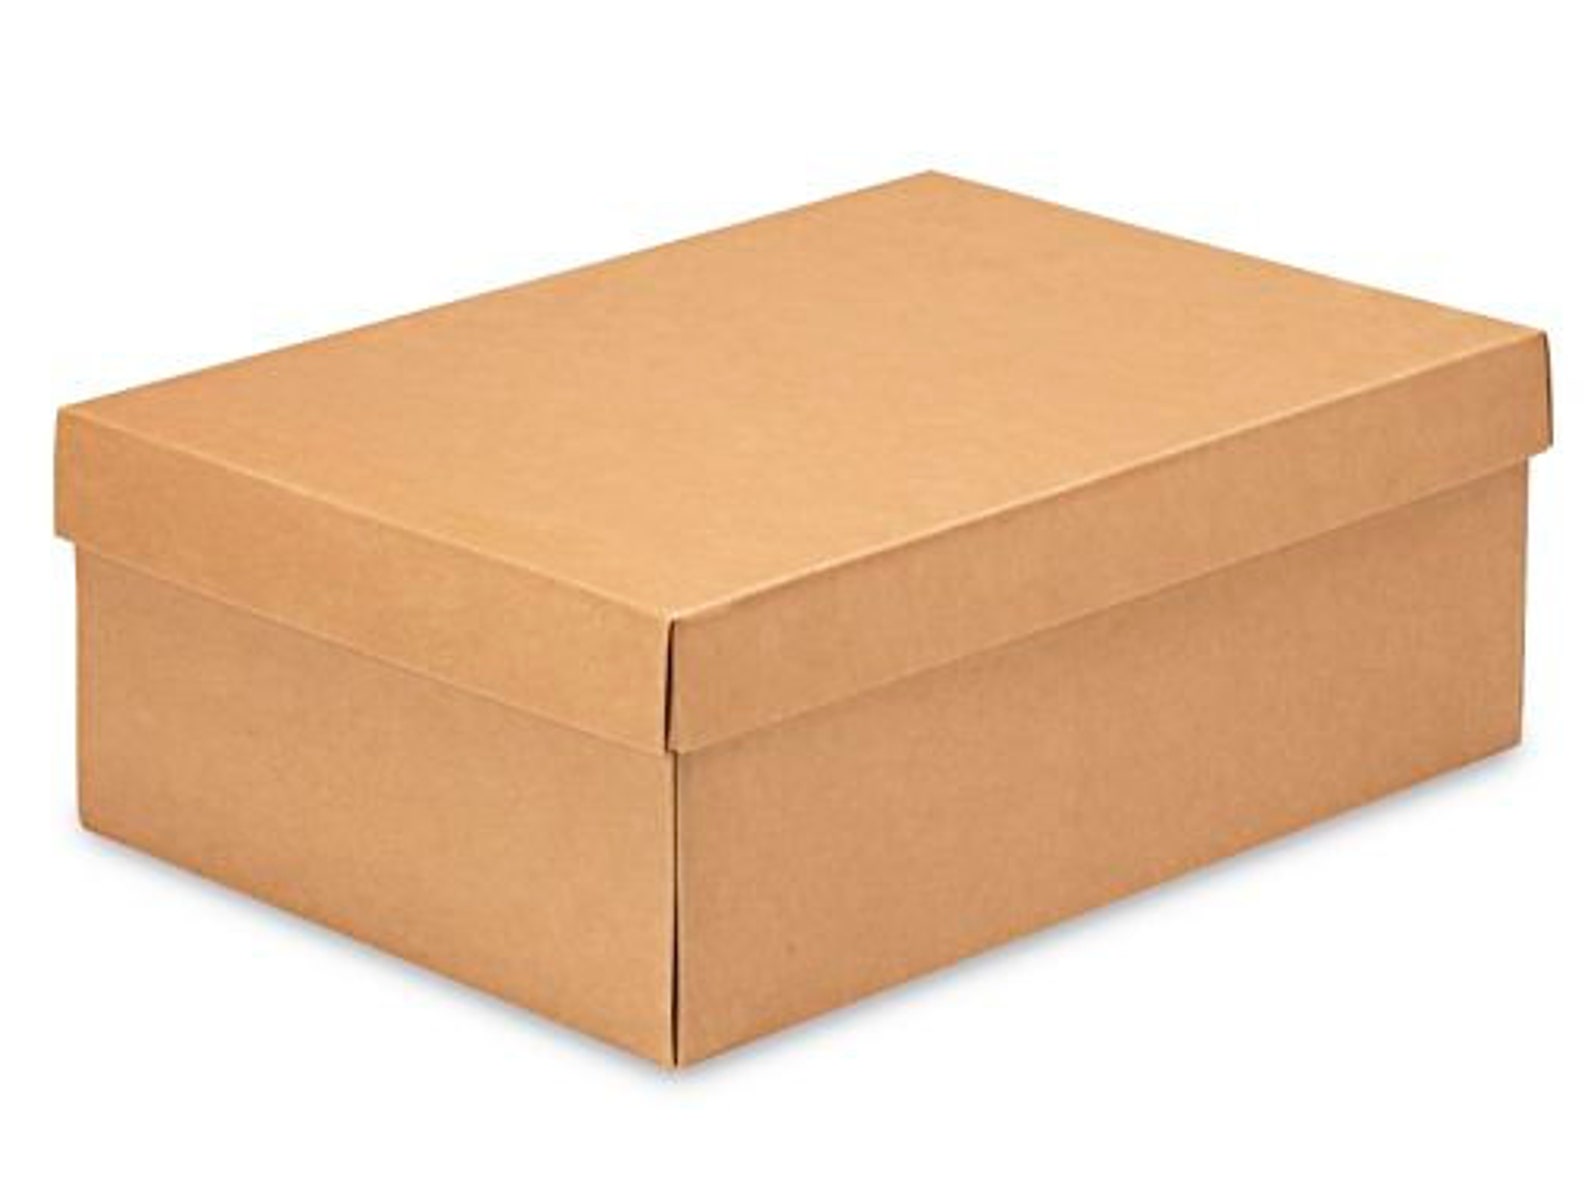 Купить коробки в иваново. Крафт коробка самосборная 25х25х10. Коробка картонная 150х150х150. Коробка самосборная 22 х 16,5 х 10 см. Коробка самосборная крафт 10х10х10см.